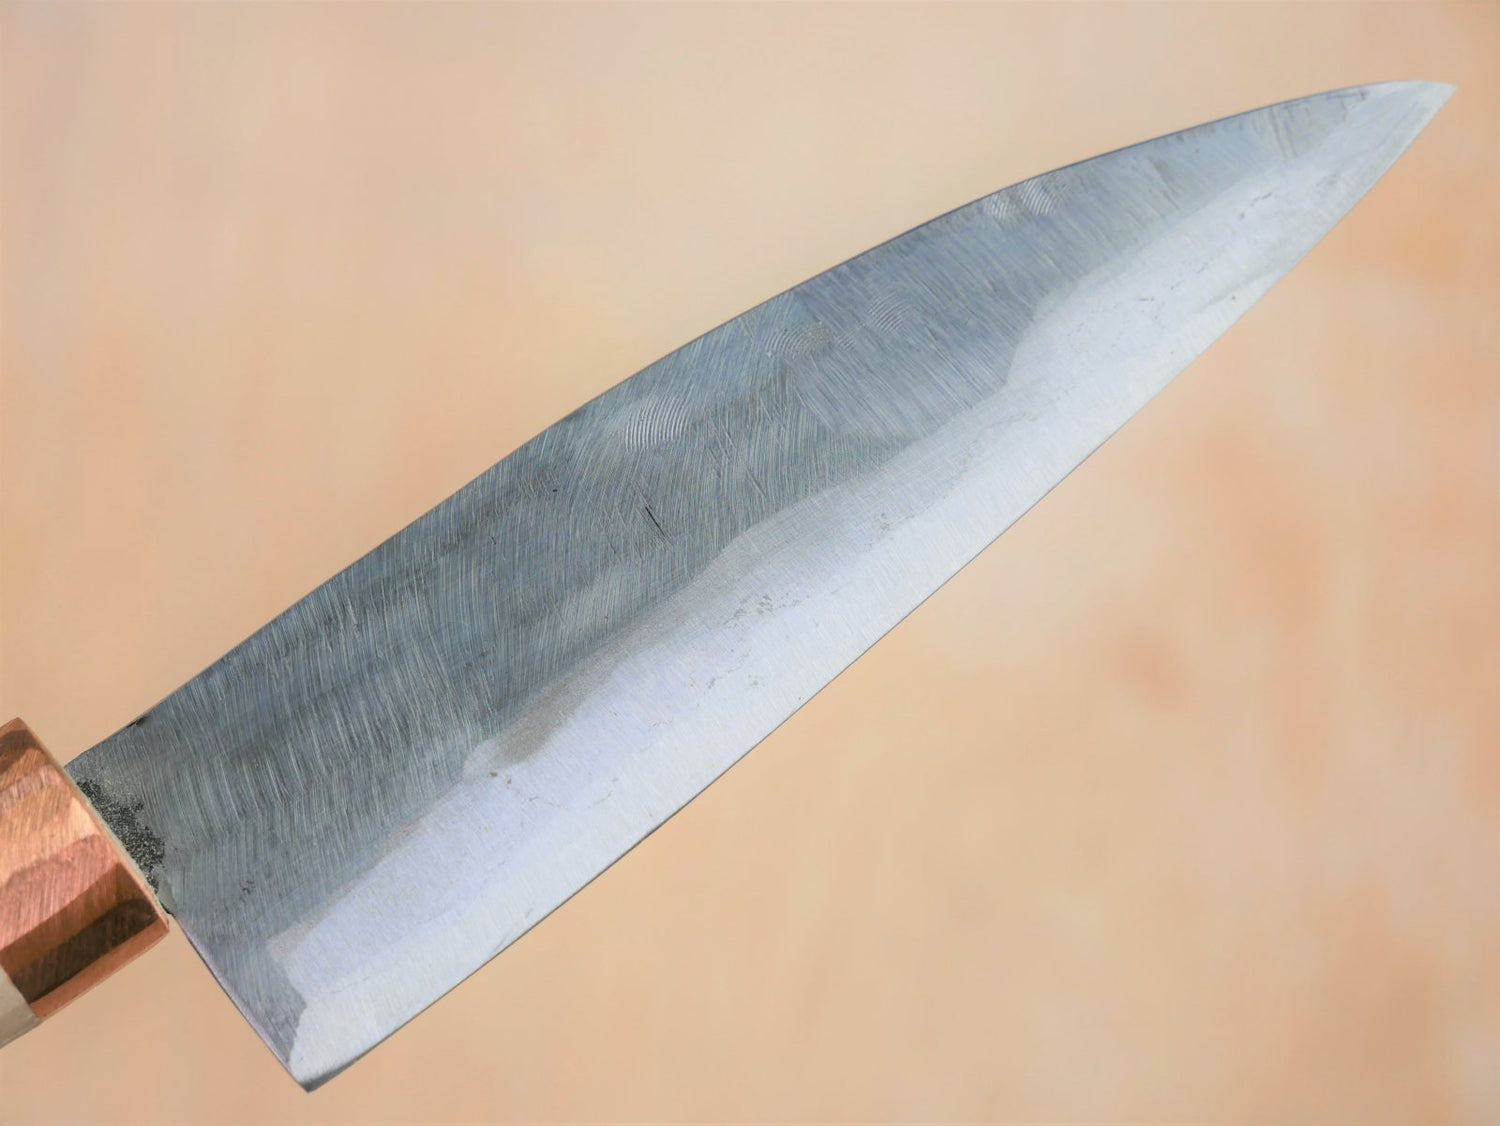 Blade of 130mm Shirogami No.3 Santoku made by Tsutomu Takahashi